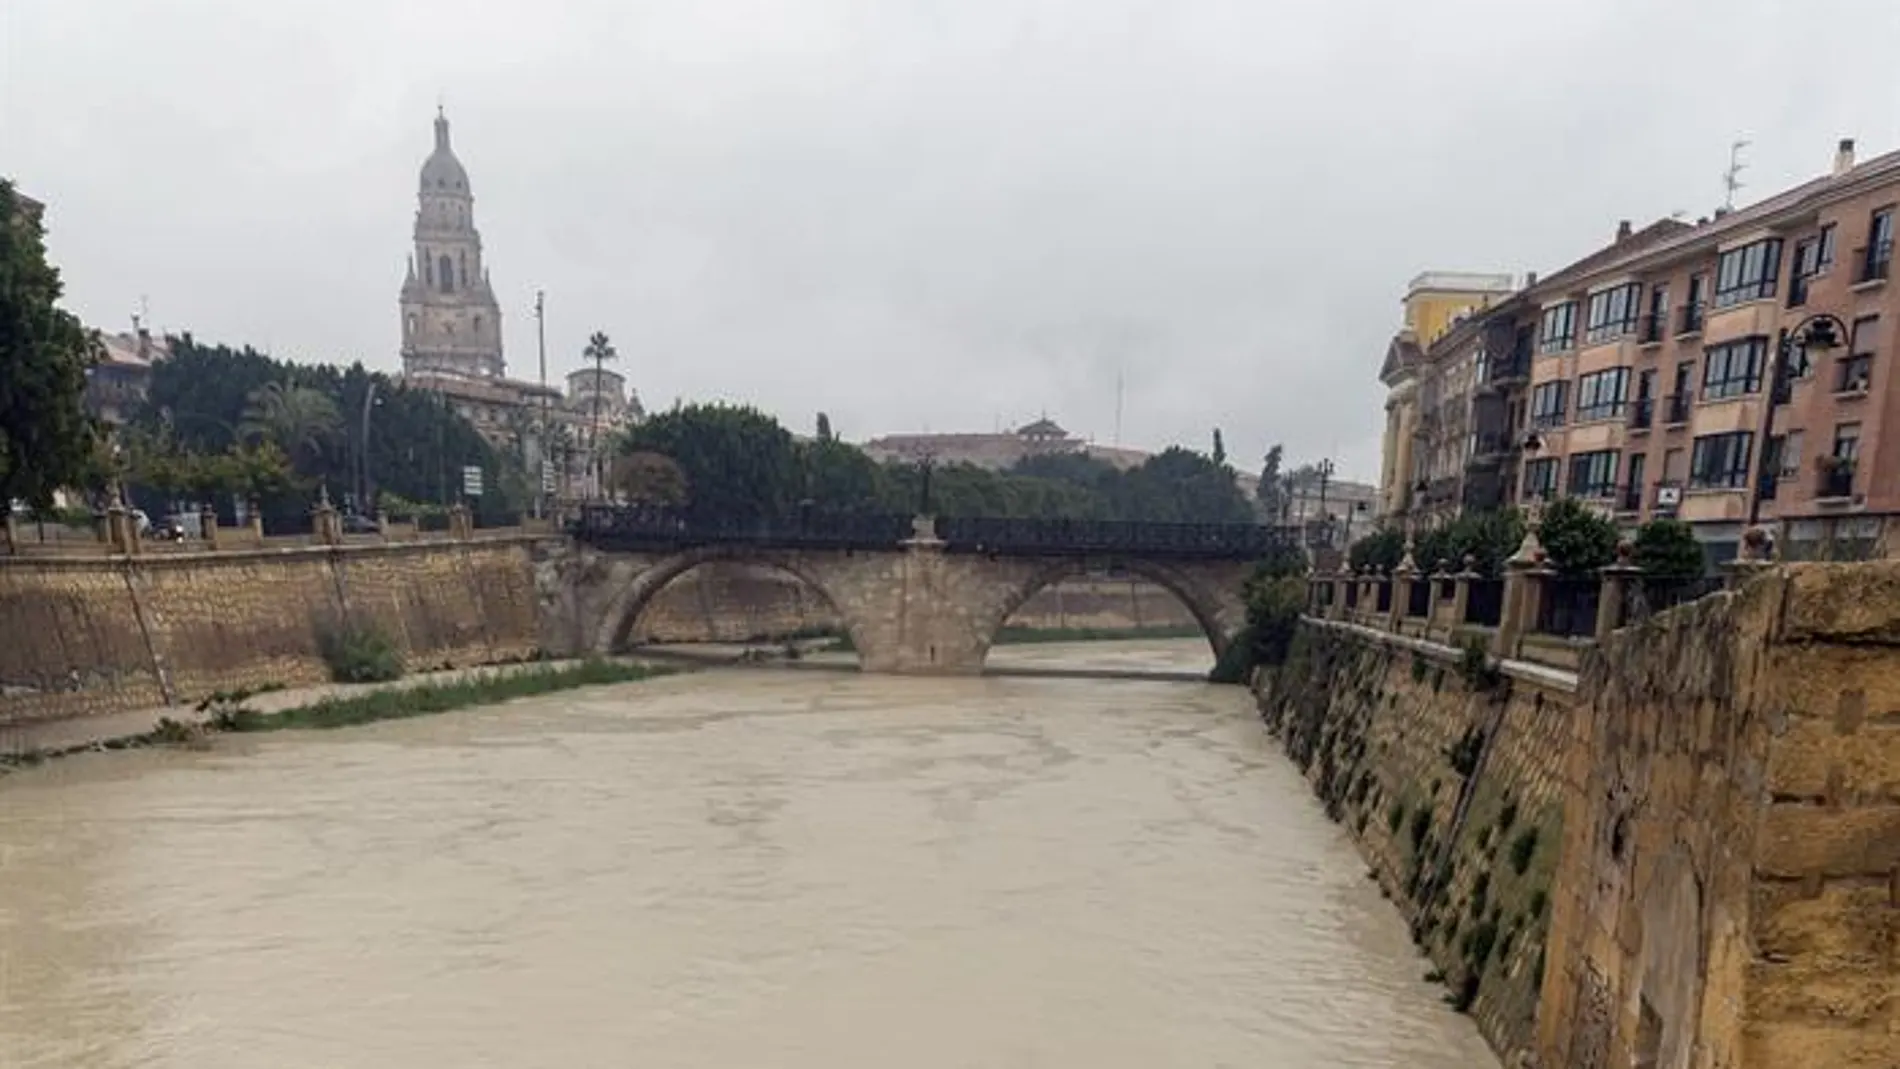  El rio Segura a su paso por Murcia